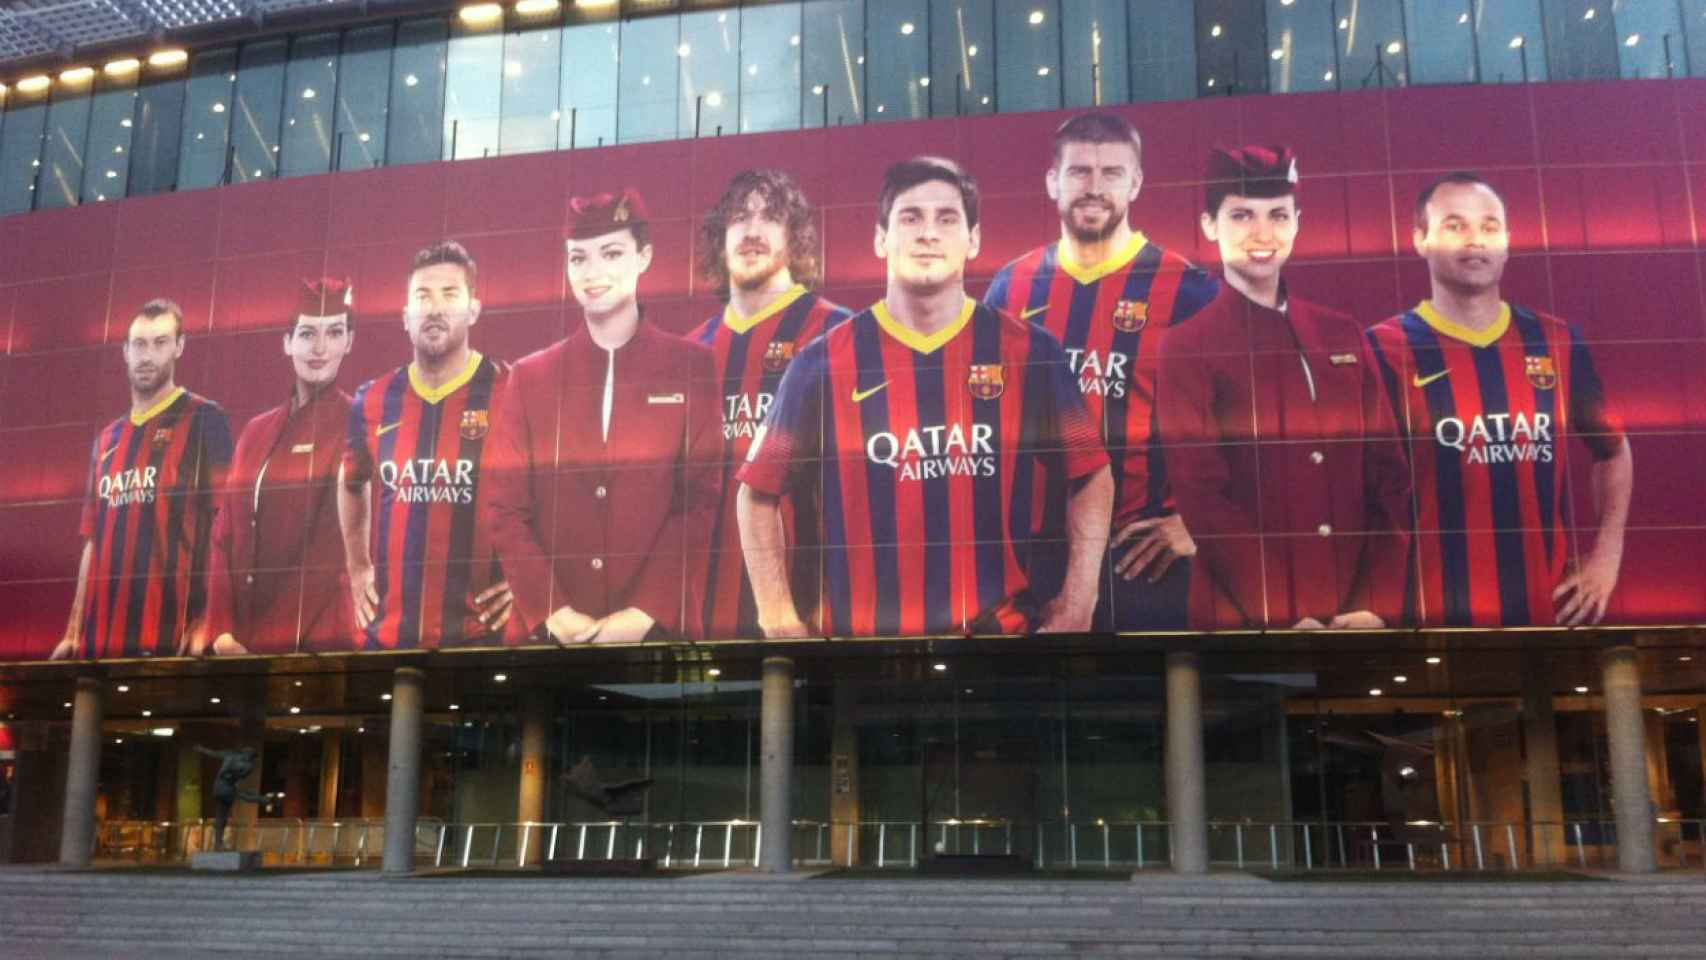 Publicidad de Qatar Airways en el Camp Nou / METRÓPOLI ABIERTA